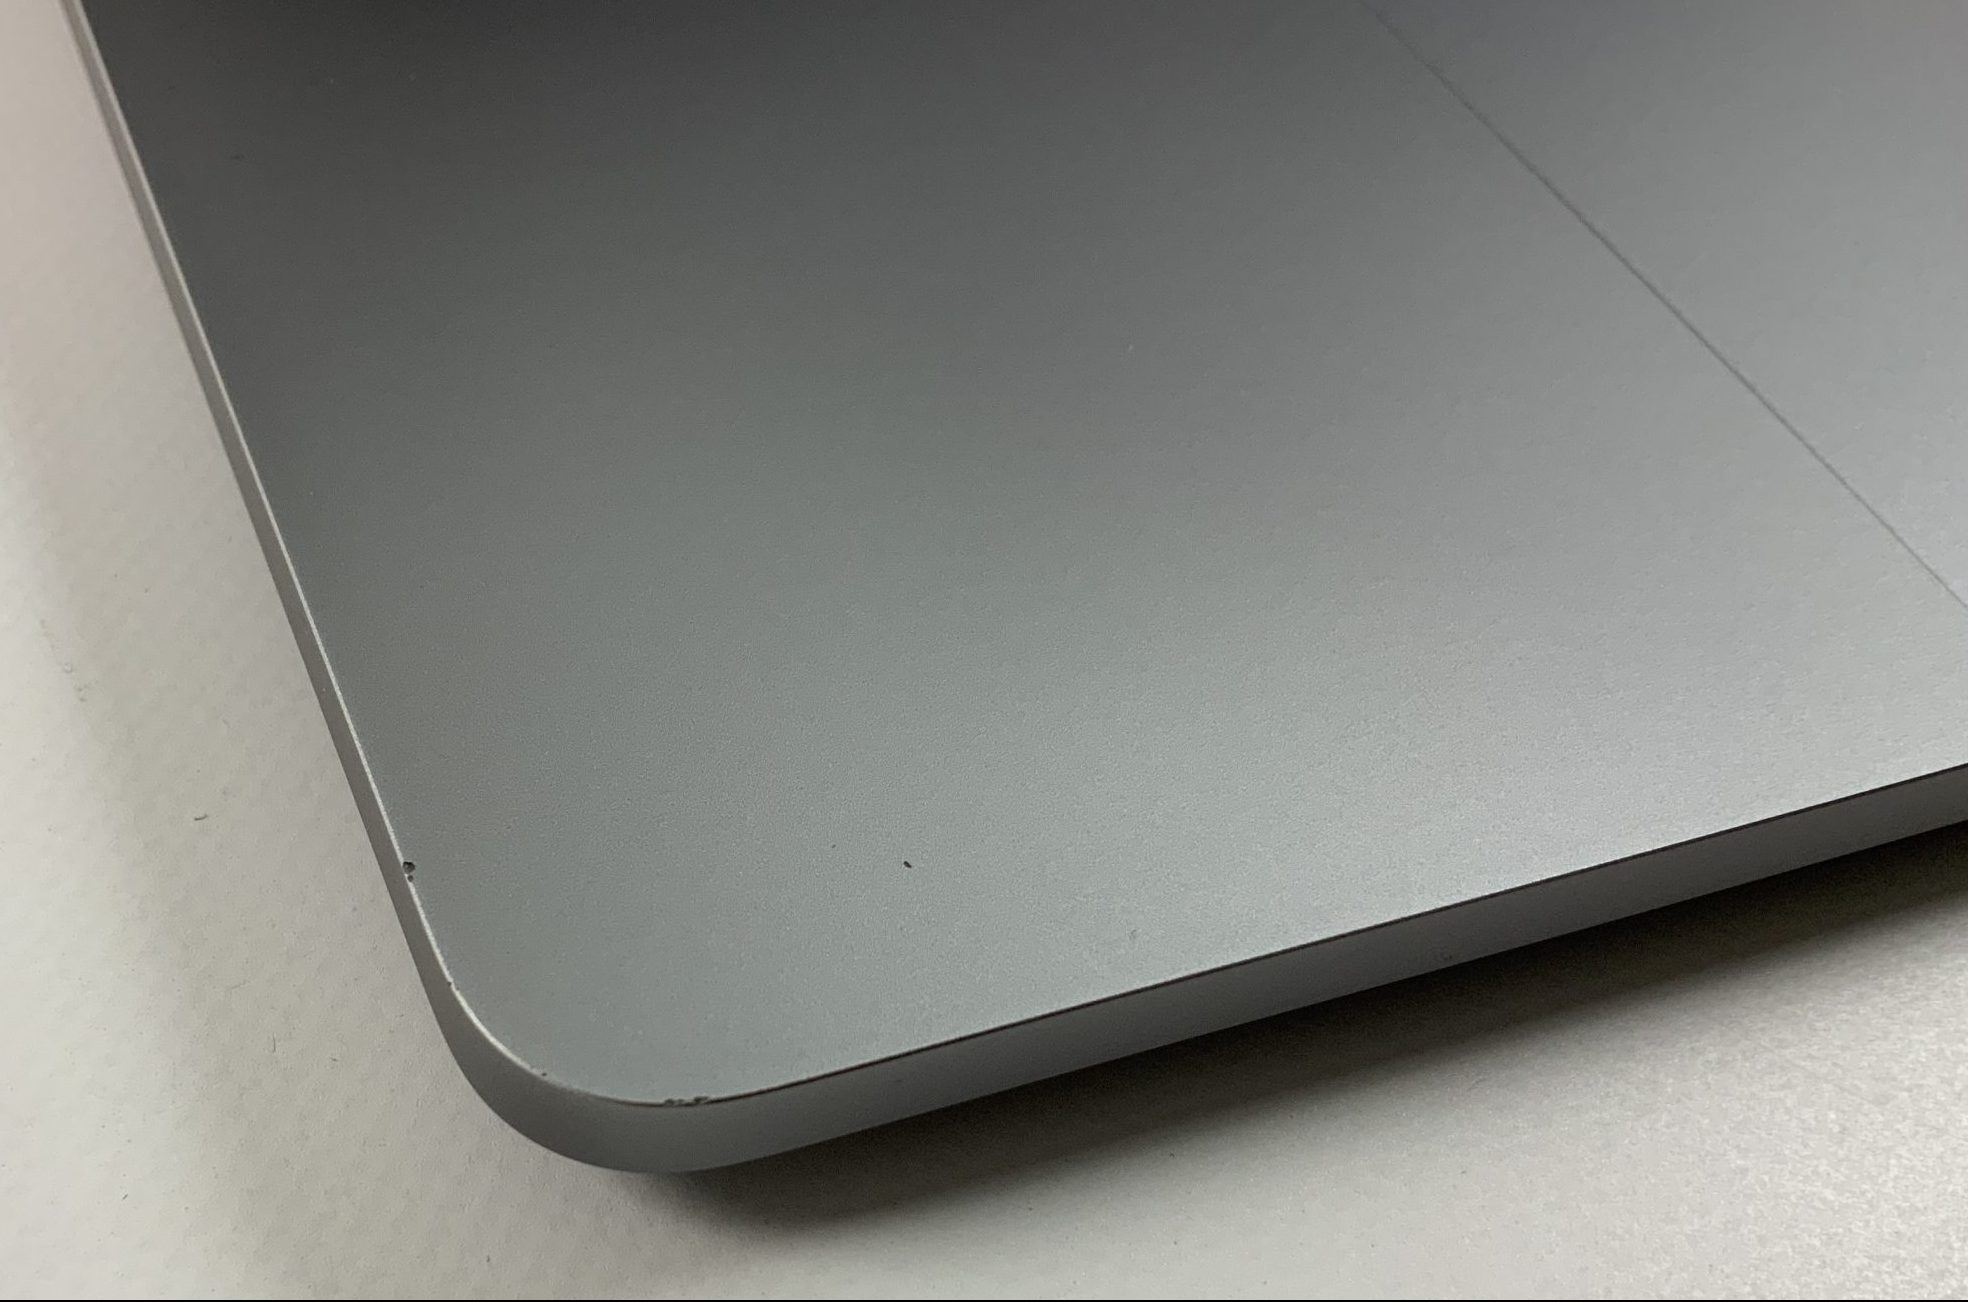 MacBook Pro 13" 2TBT Mid 2020 (Intel Quad-Core i5 1.4 GHz 8 GB RAM 256 GB SSD), Space Gray, Intel Quad-Core i5 1.4 GHz, 8 GB RAM, 256 GB SSD, Kuva 3